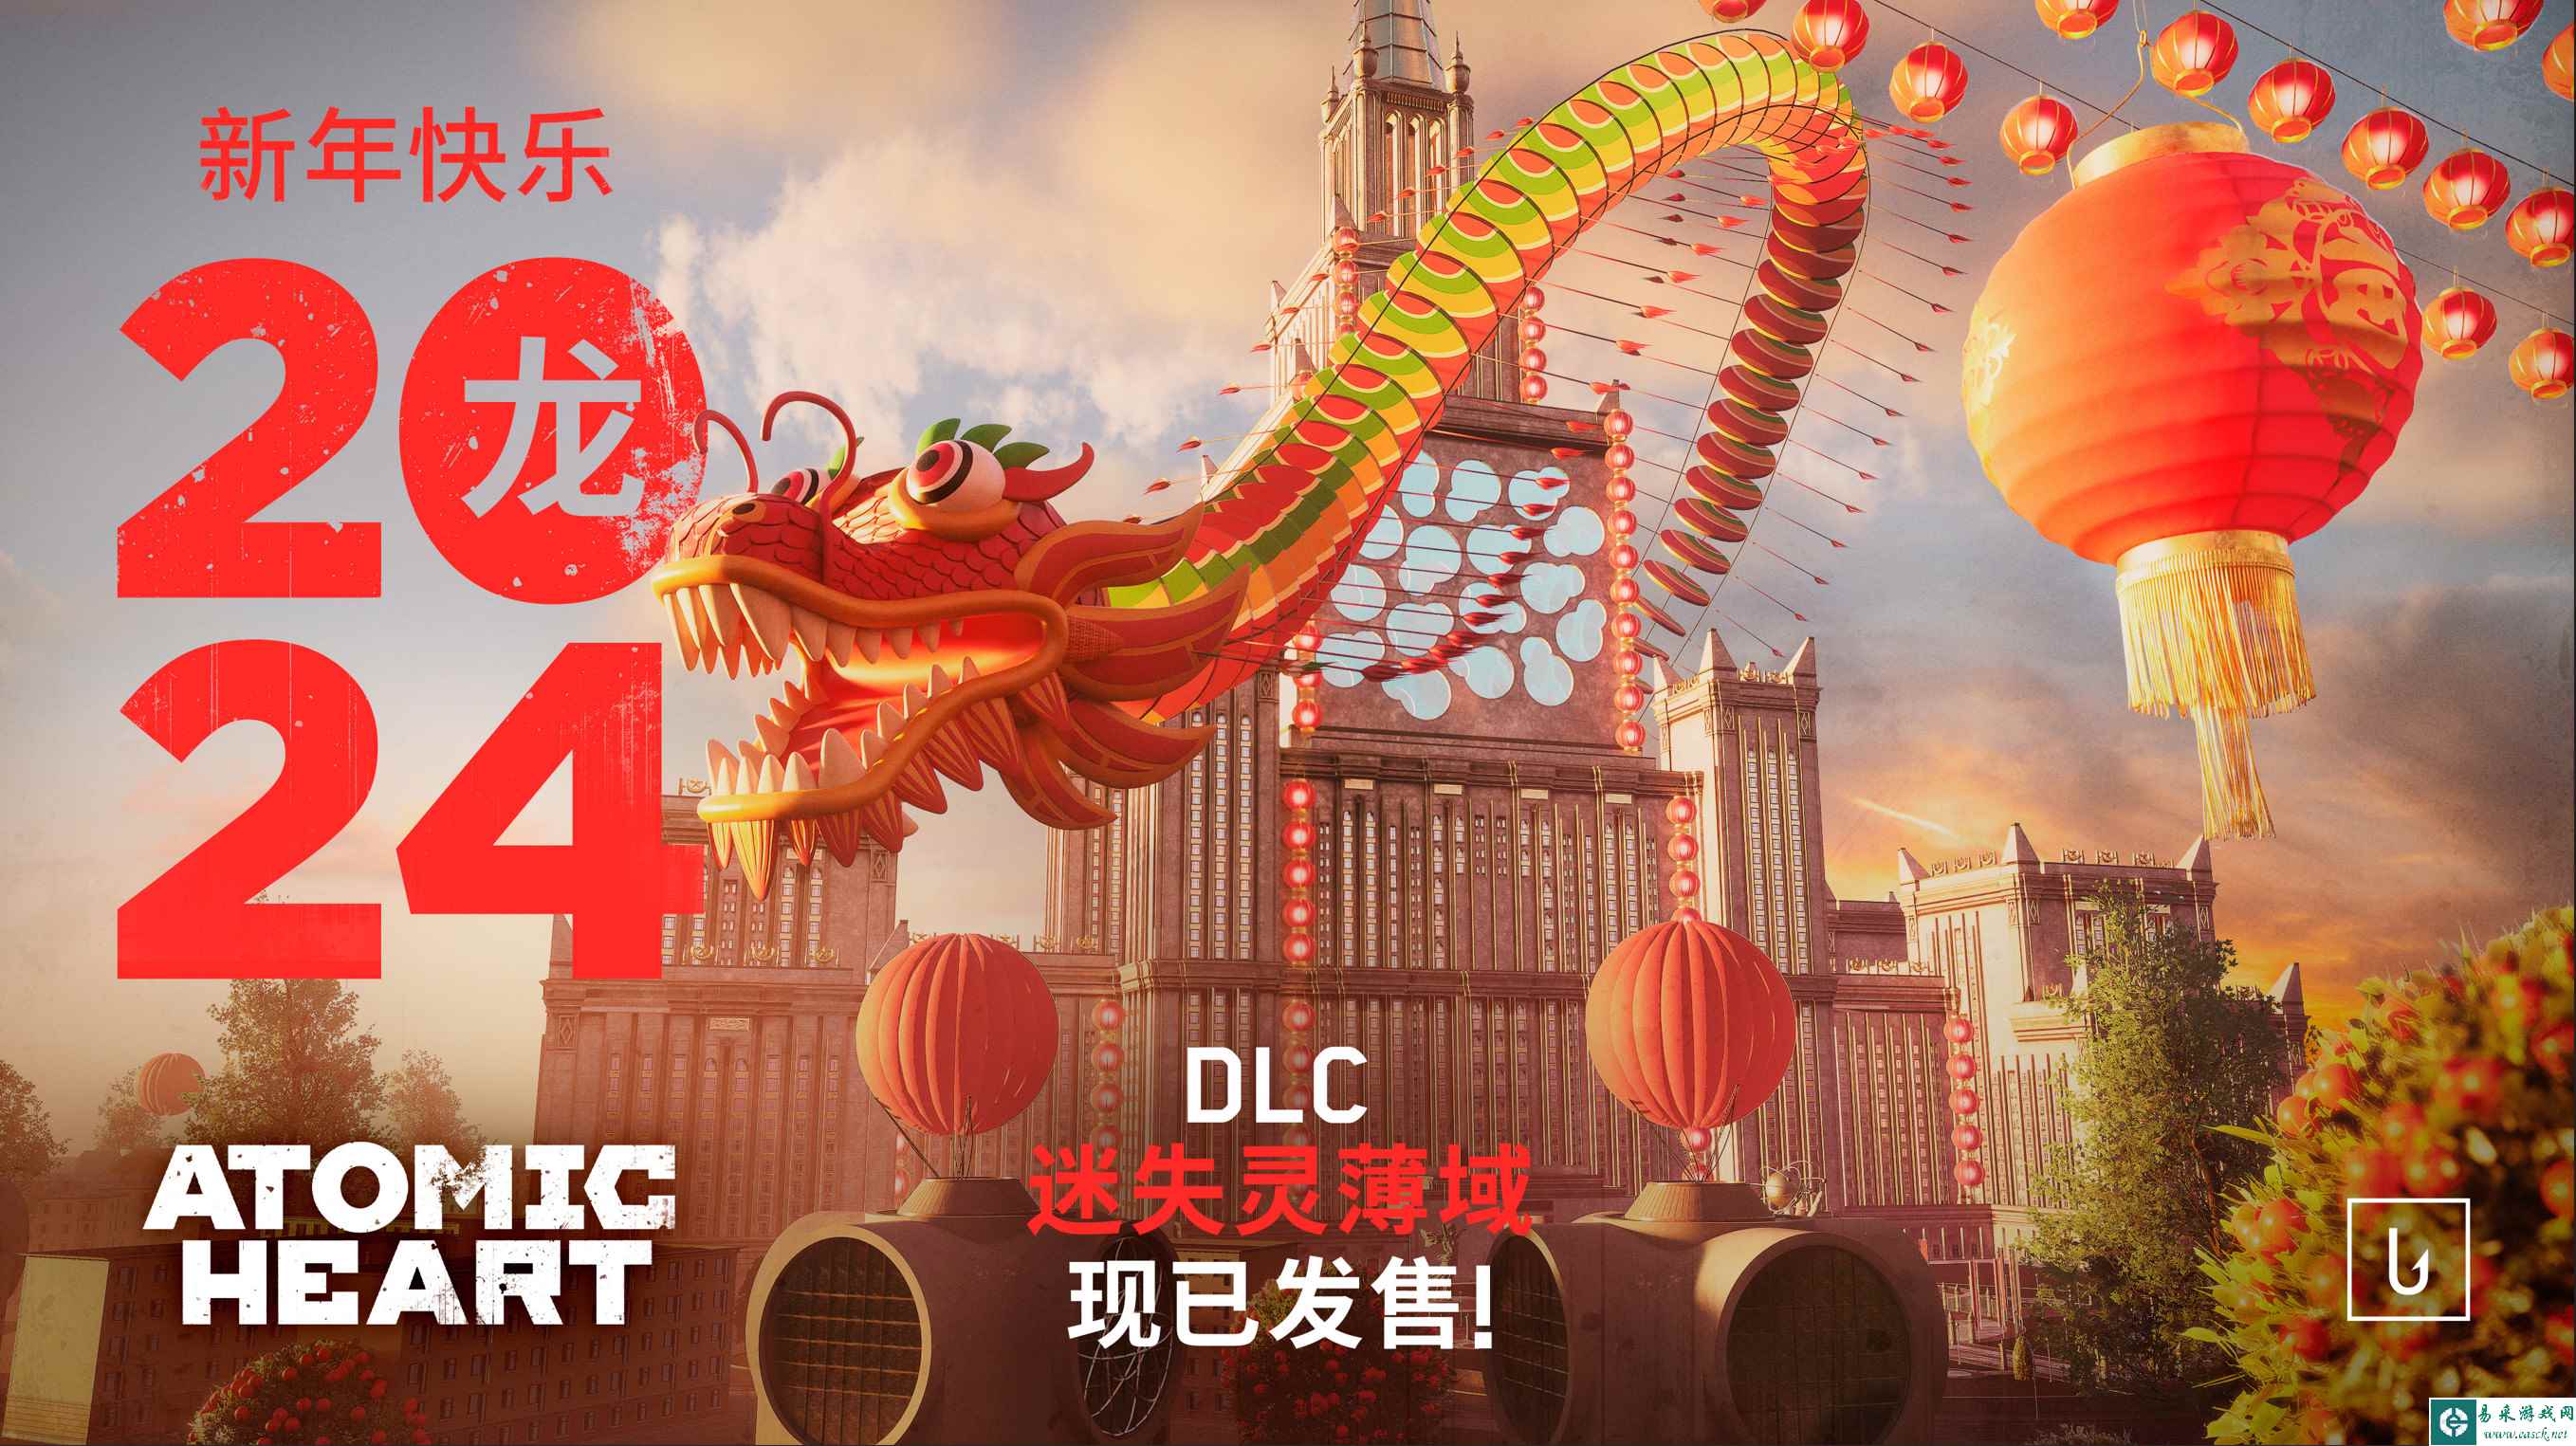 《原子之心》公布DLC2“迷失灵薄域”宣传片 为庆祝新年半价促销